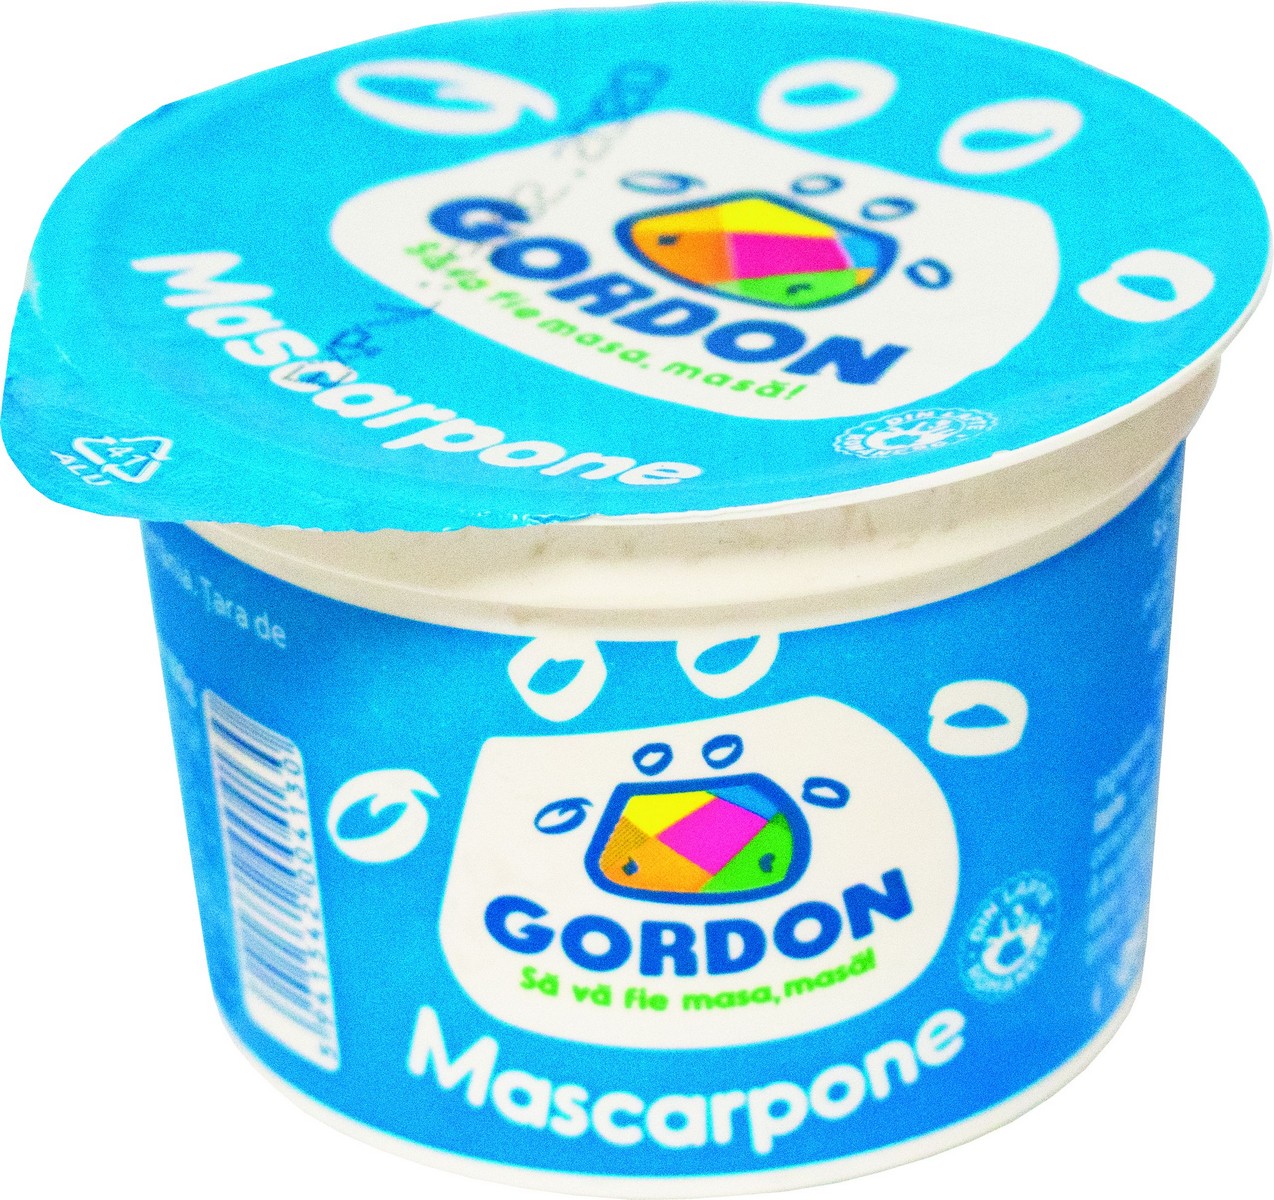 MASCARPONE GORDON CASEROLA 250G